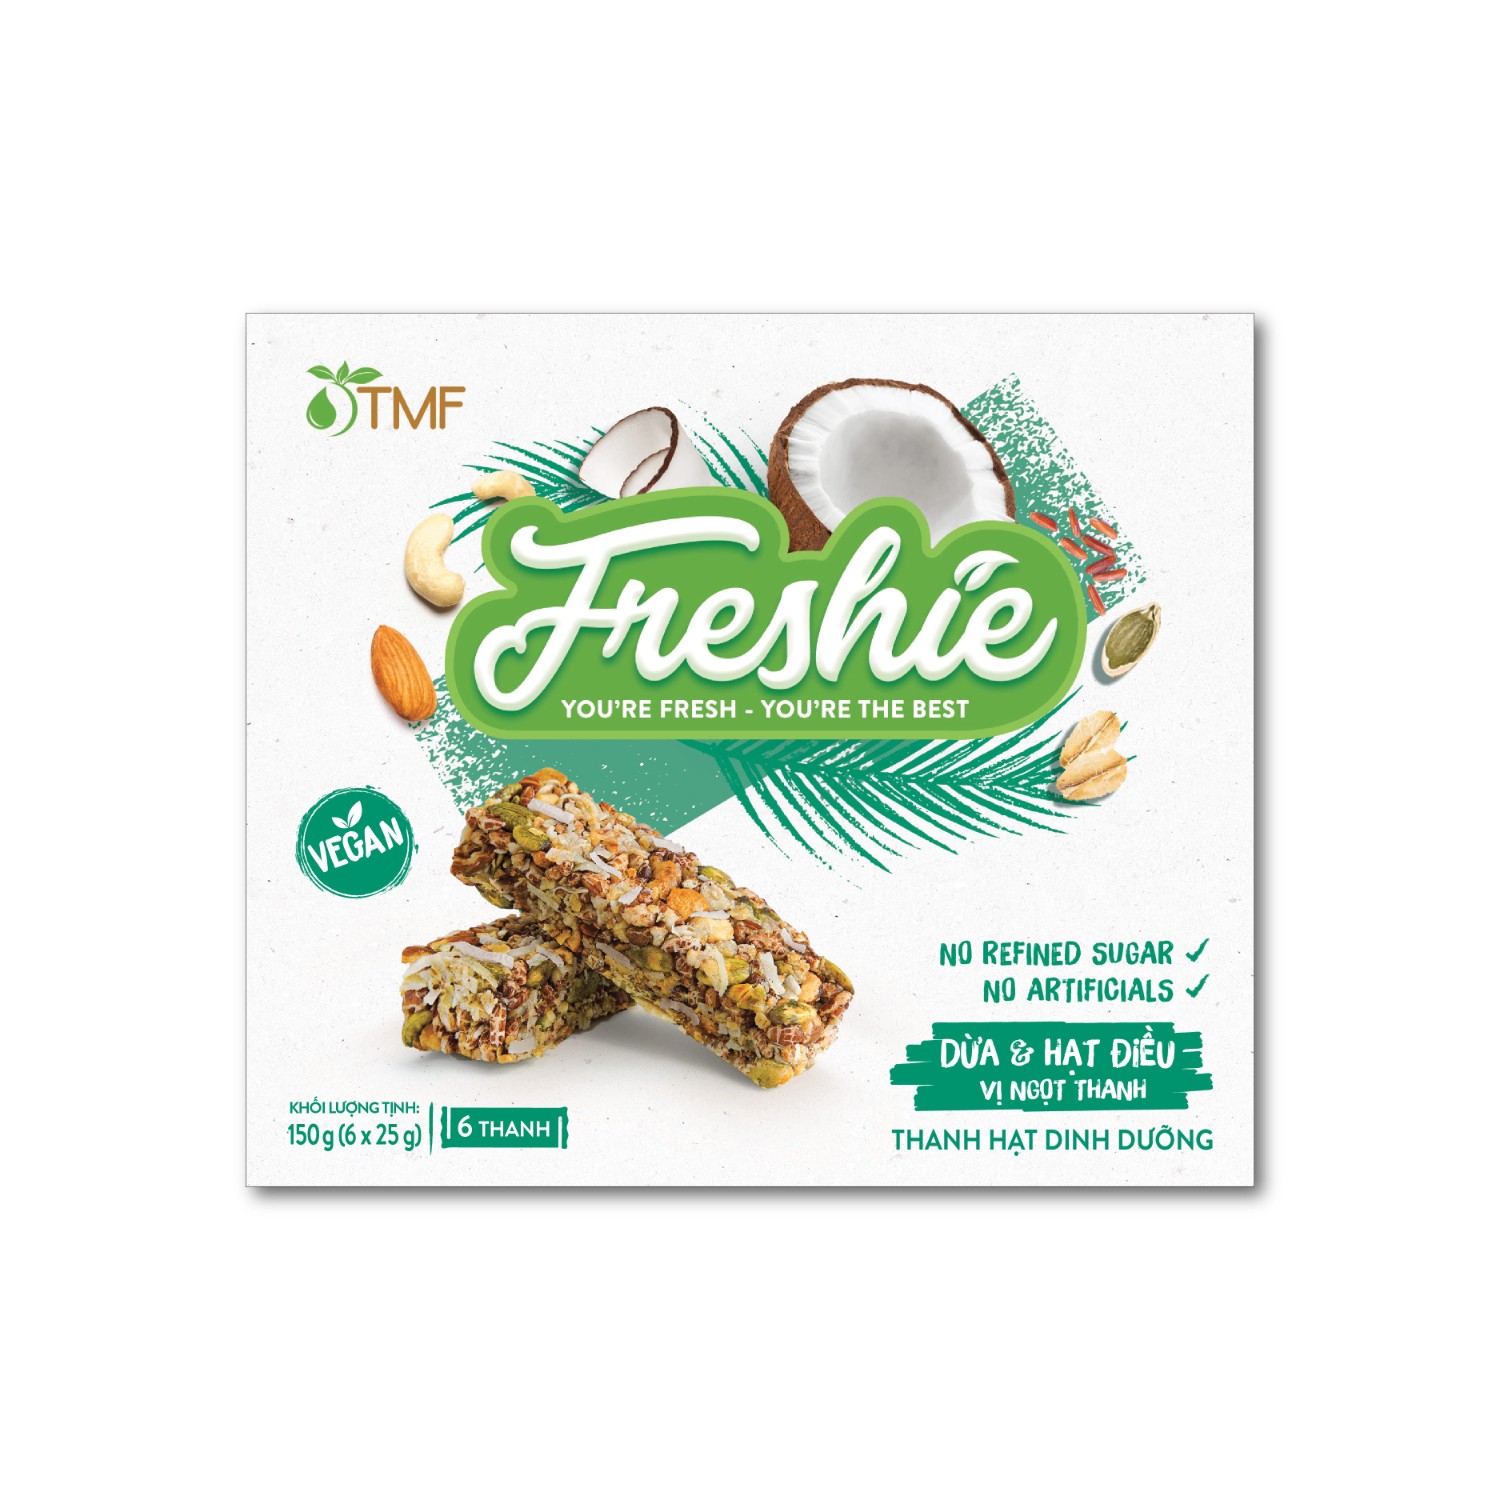 Thanh hạt dinh dưỡng Freshie - Dừa & Hạt điều